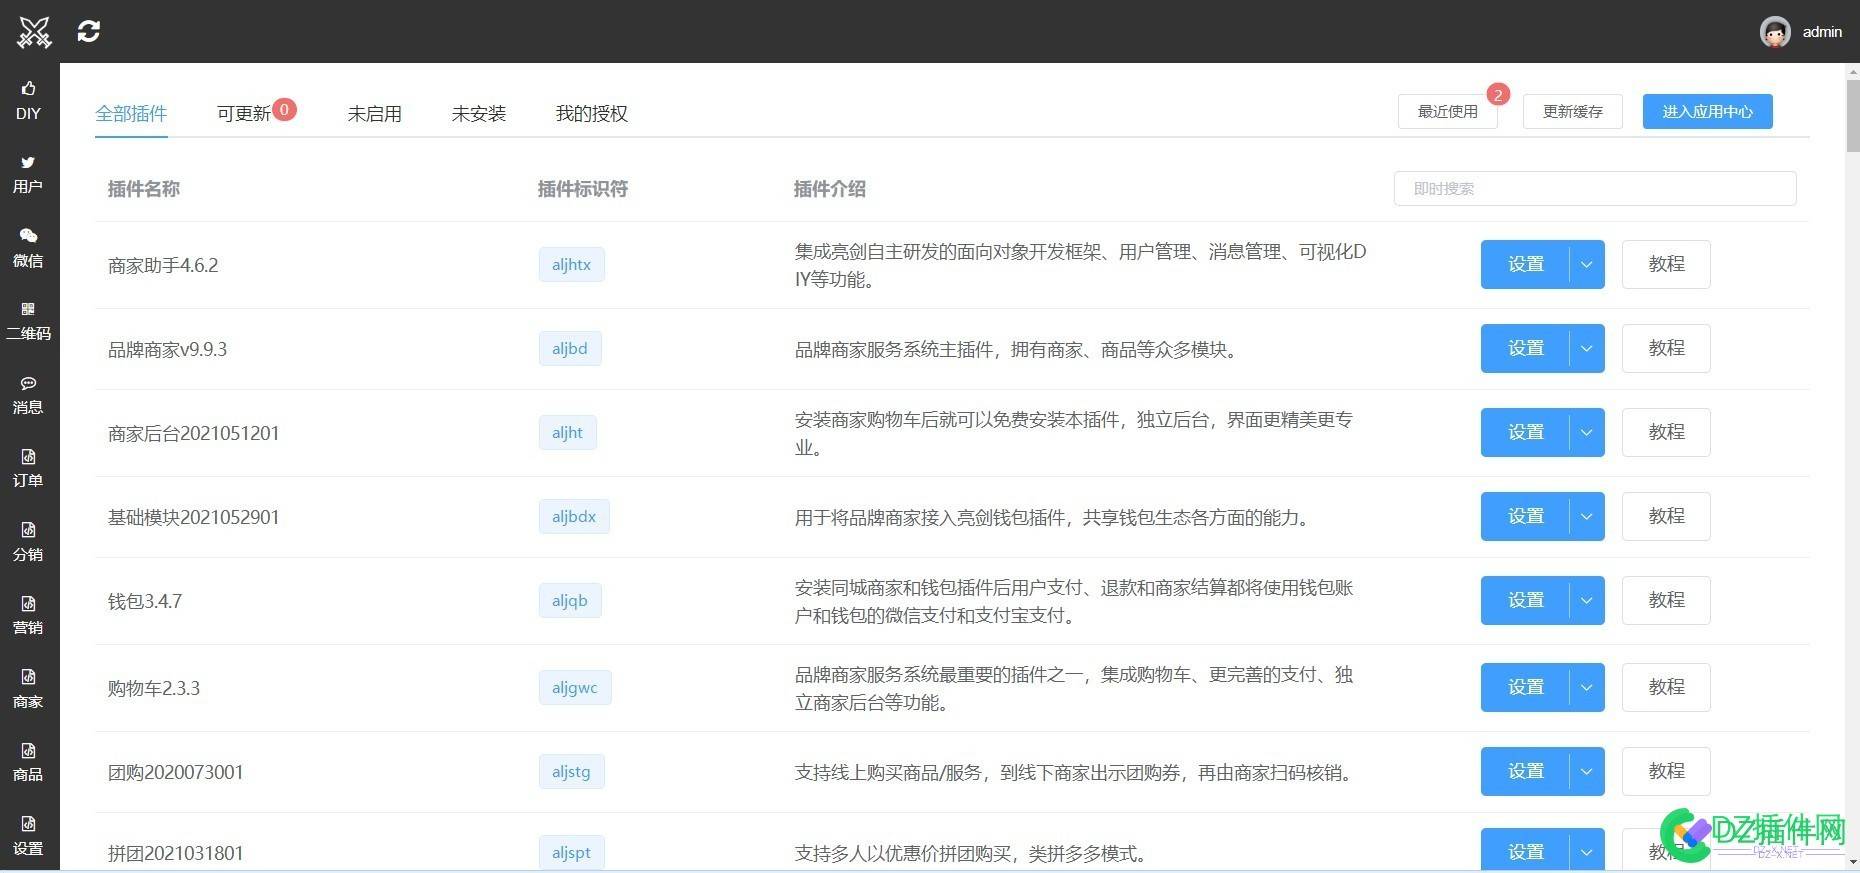 商家助手扩展文件 1.0(liangjianyun.php)[扩展][免费下载] 商家,助手,扩展,文件,php